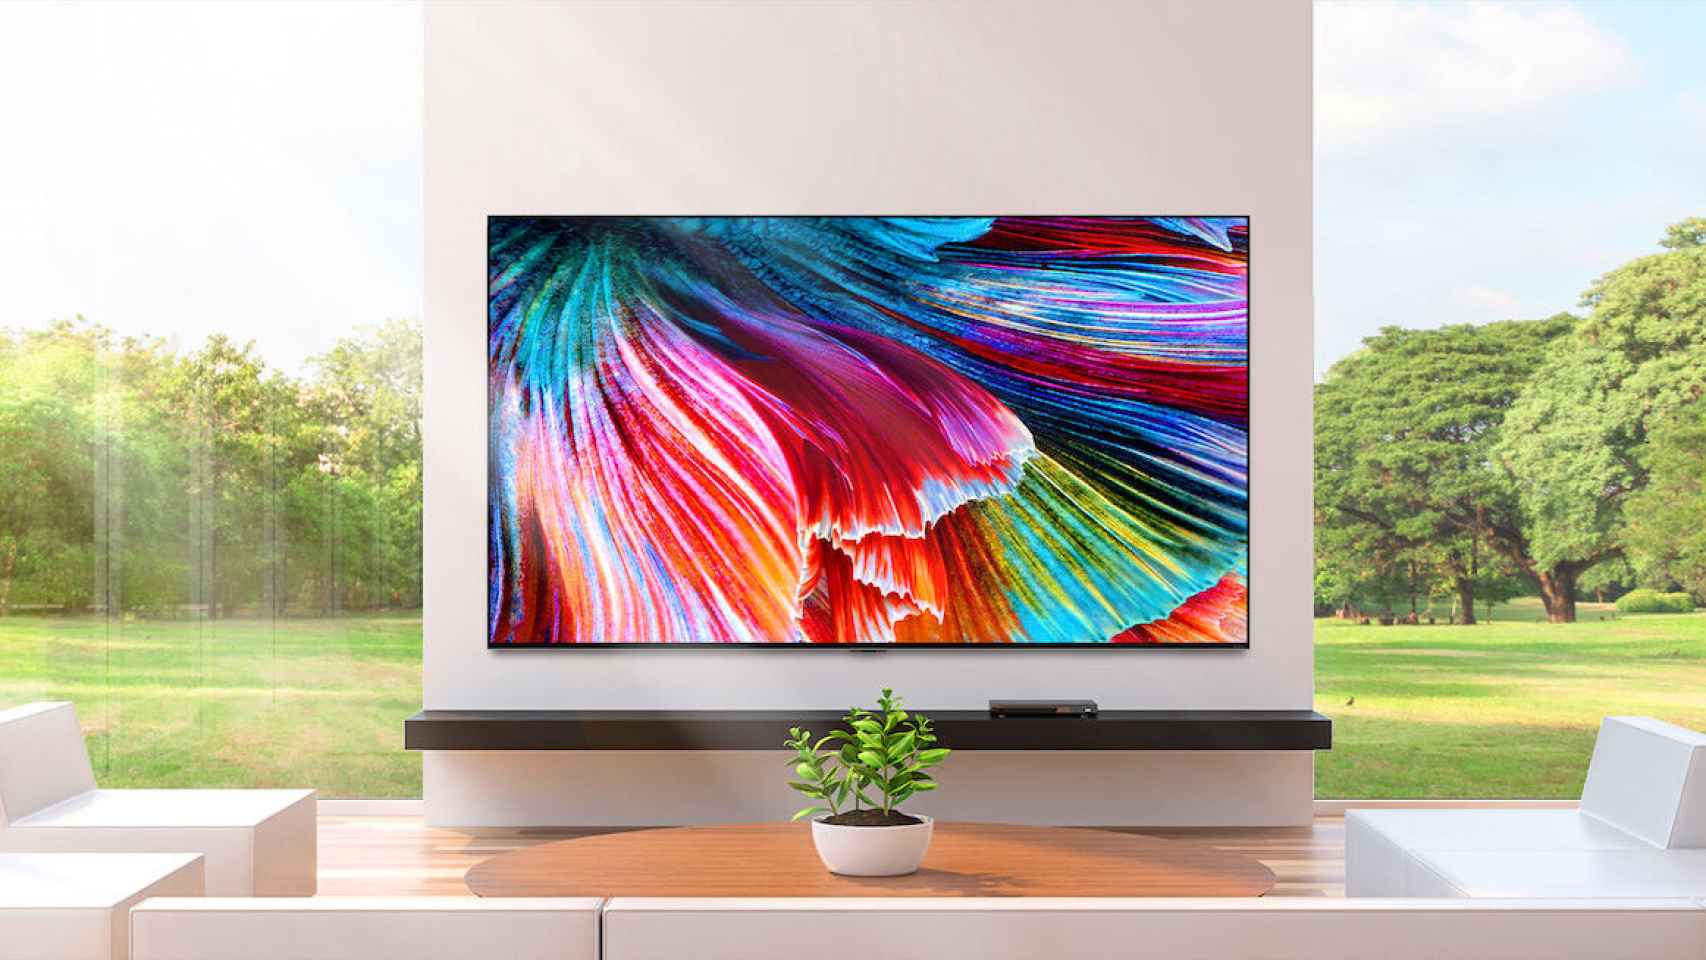 Los nuevos televisores LG QNED ya disponibles en preventa exclusiva